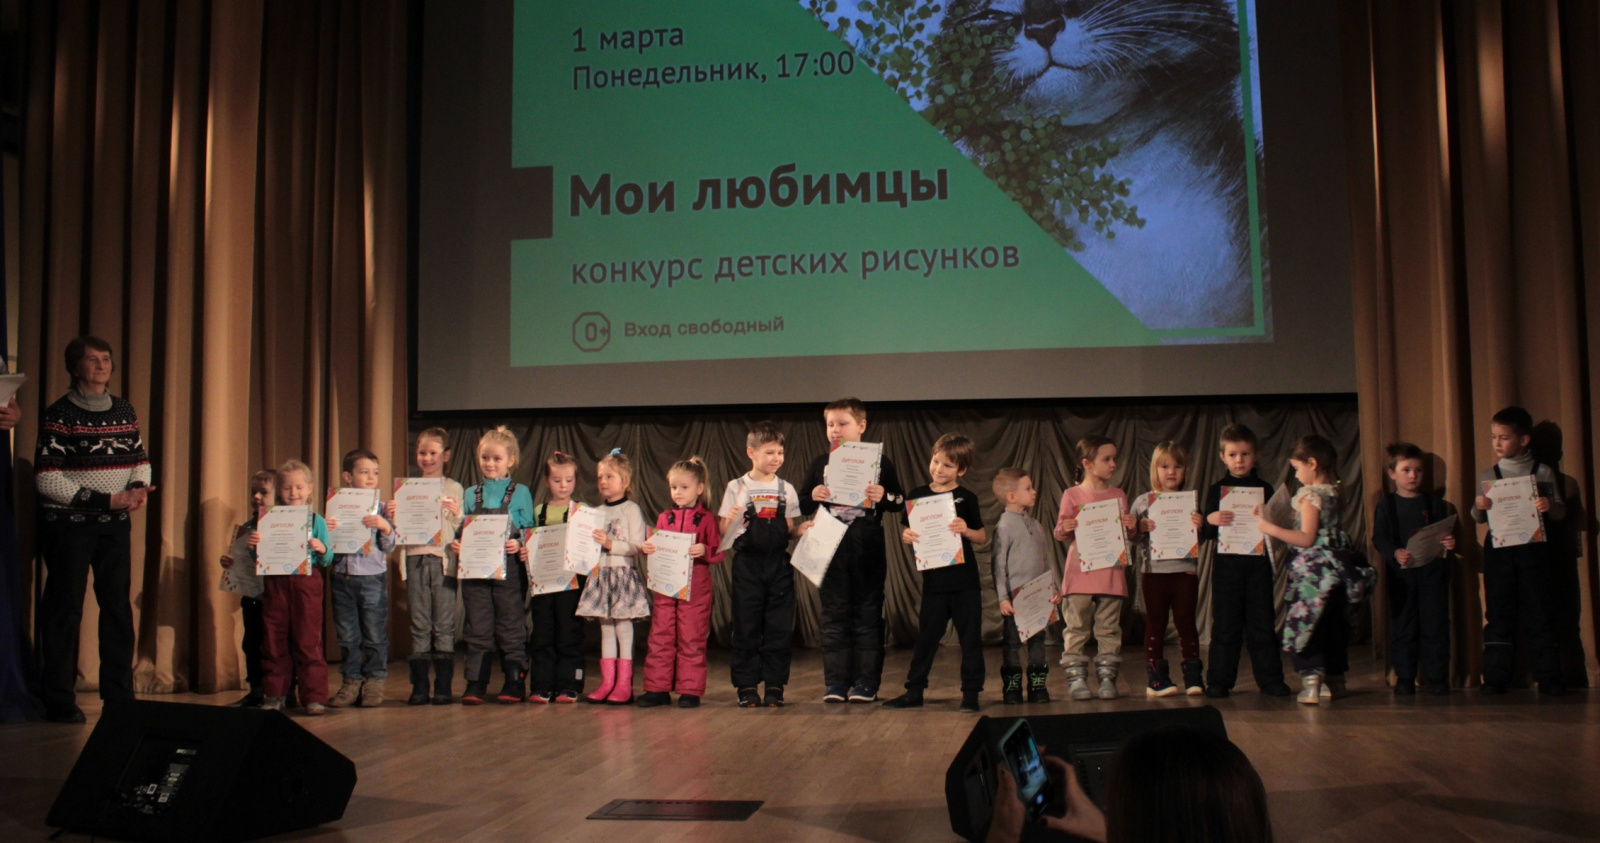 Итоги конкурса детских рисунков подвели в Рязановском